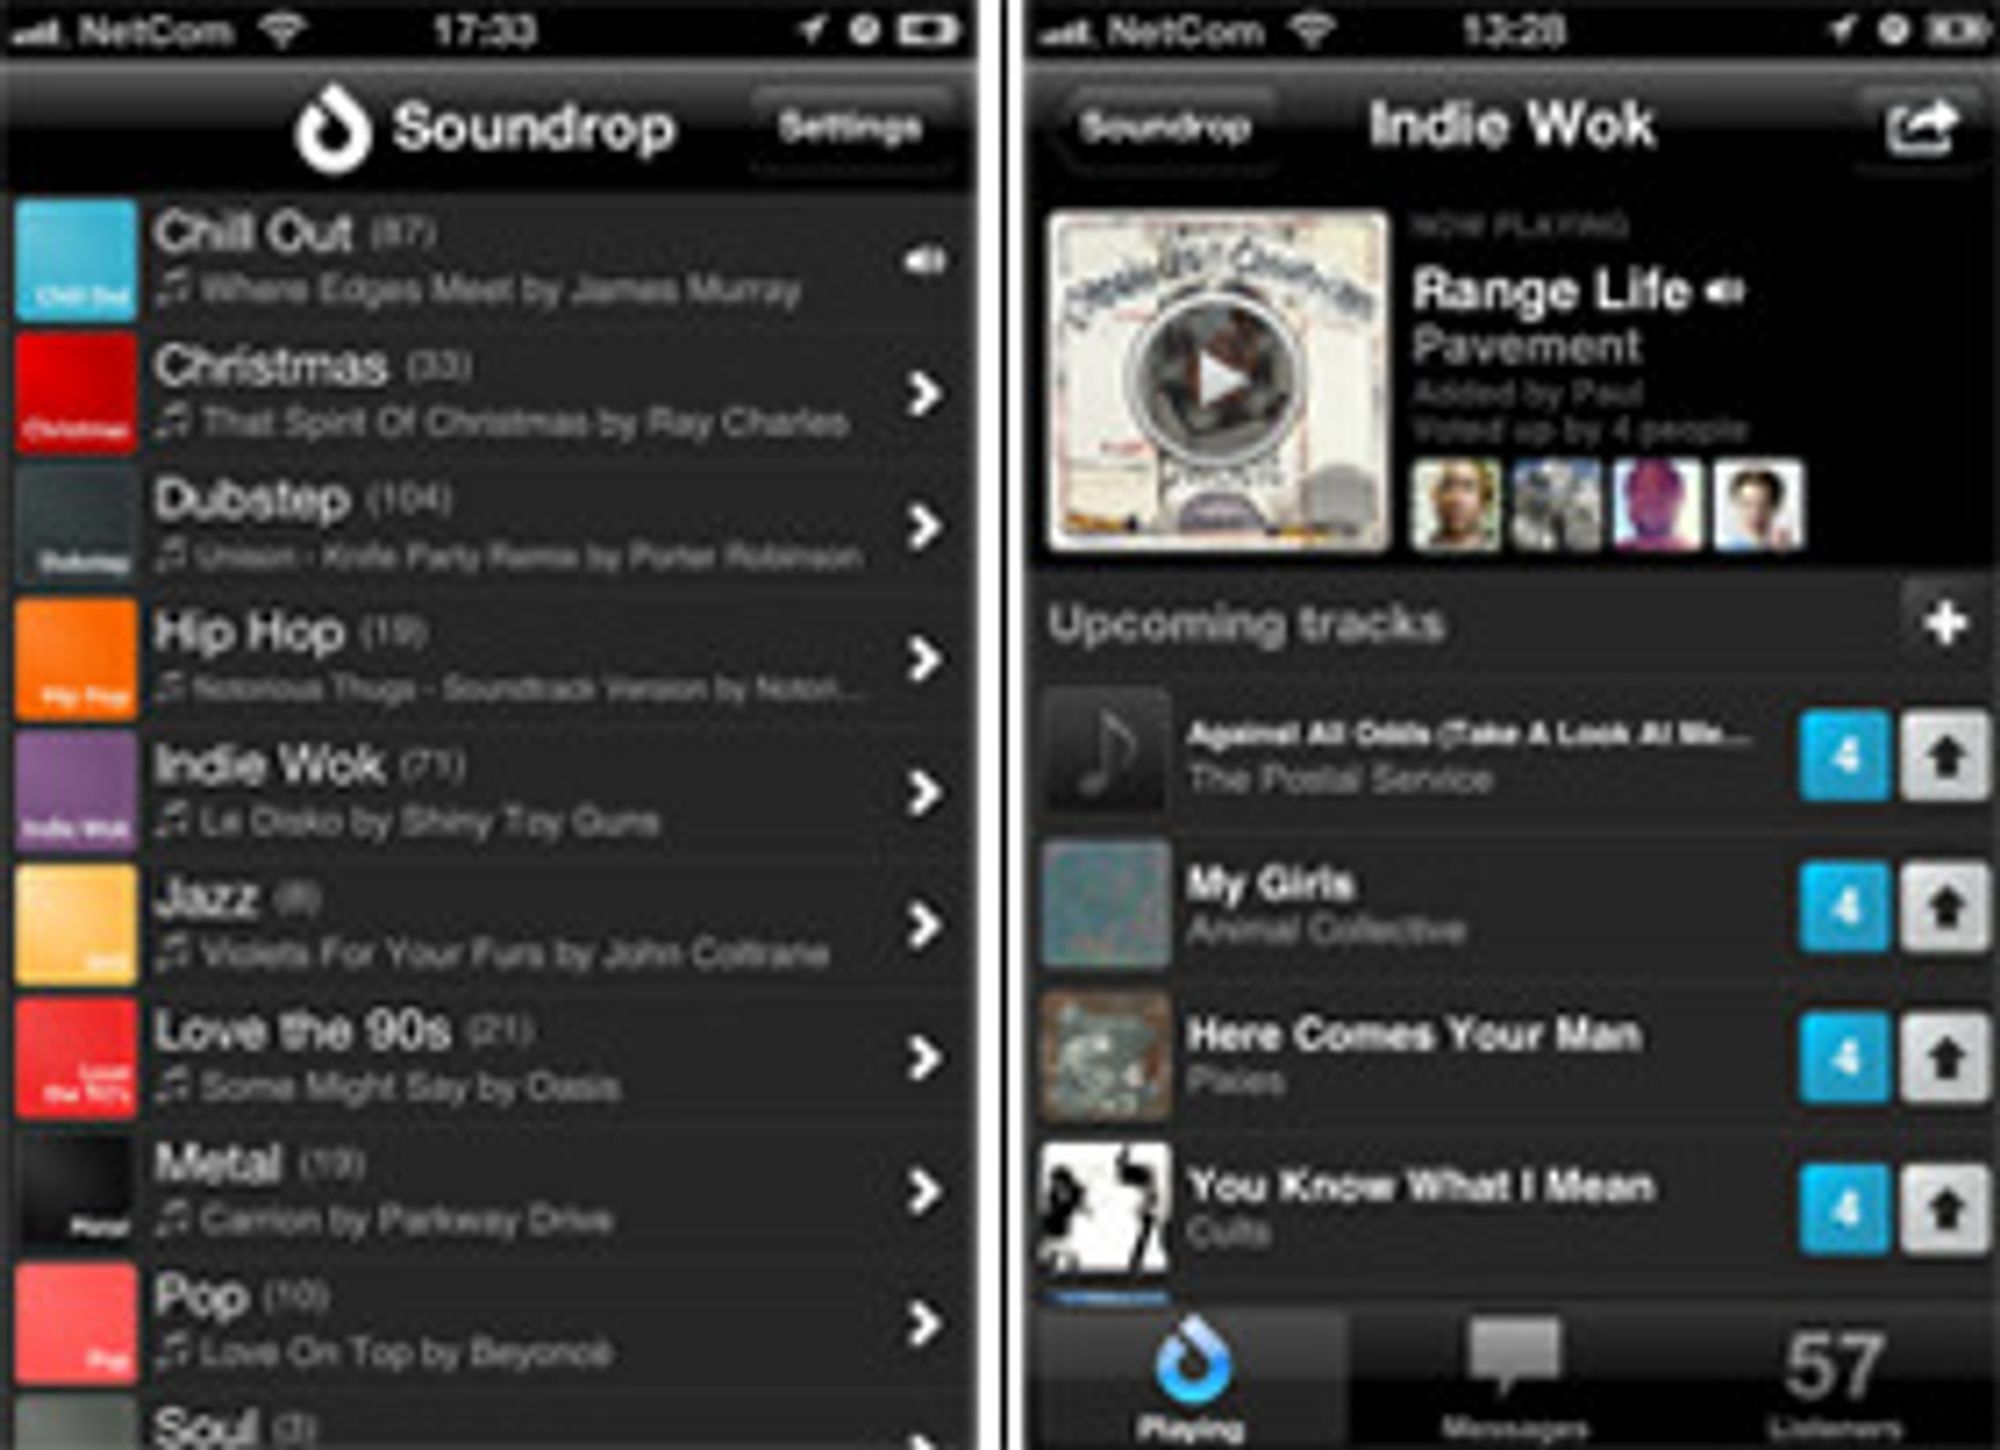 Soundrop-klienten til iOS fungerer på samme vis, og krever også premium-abonnement på Spotify.